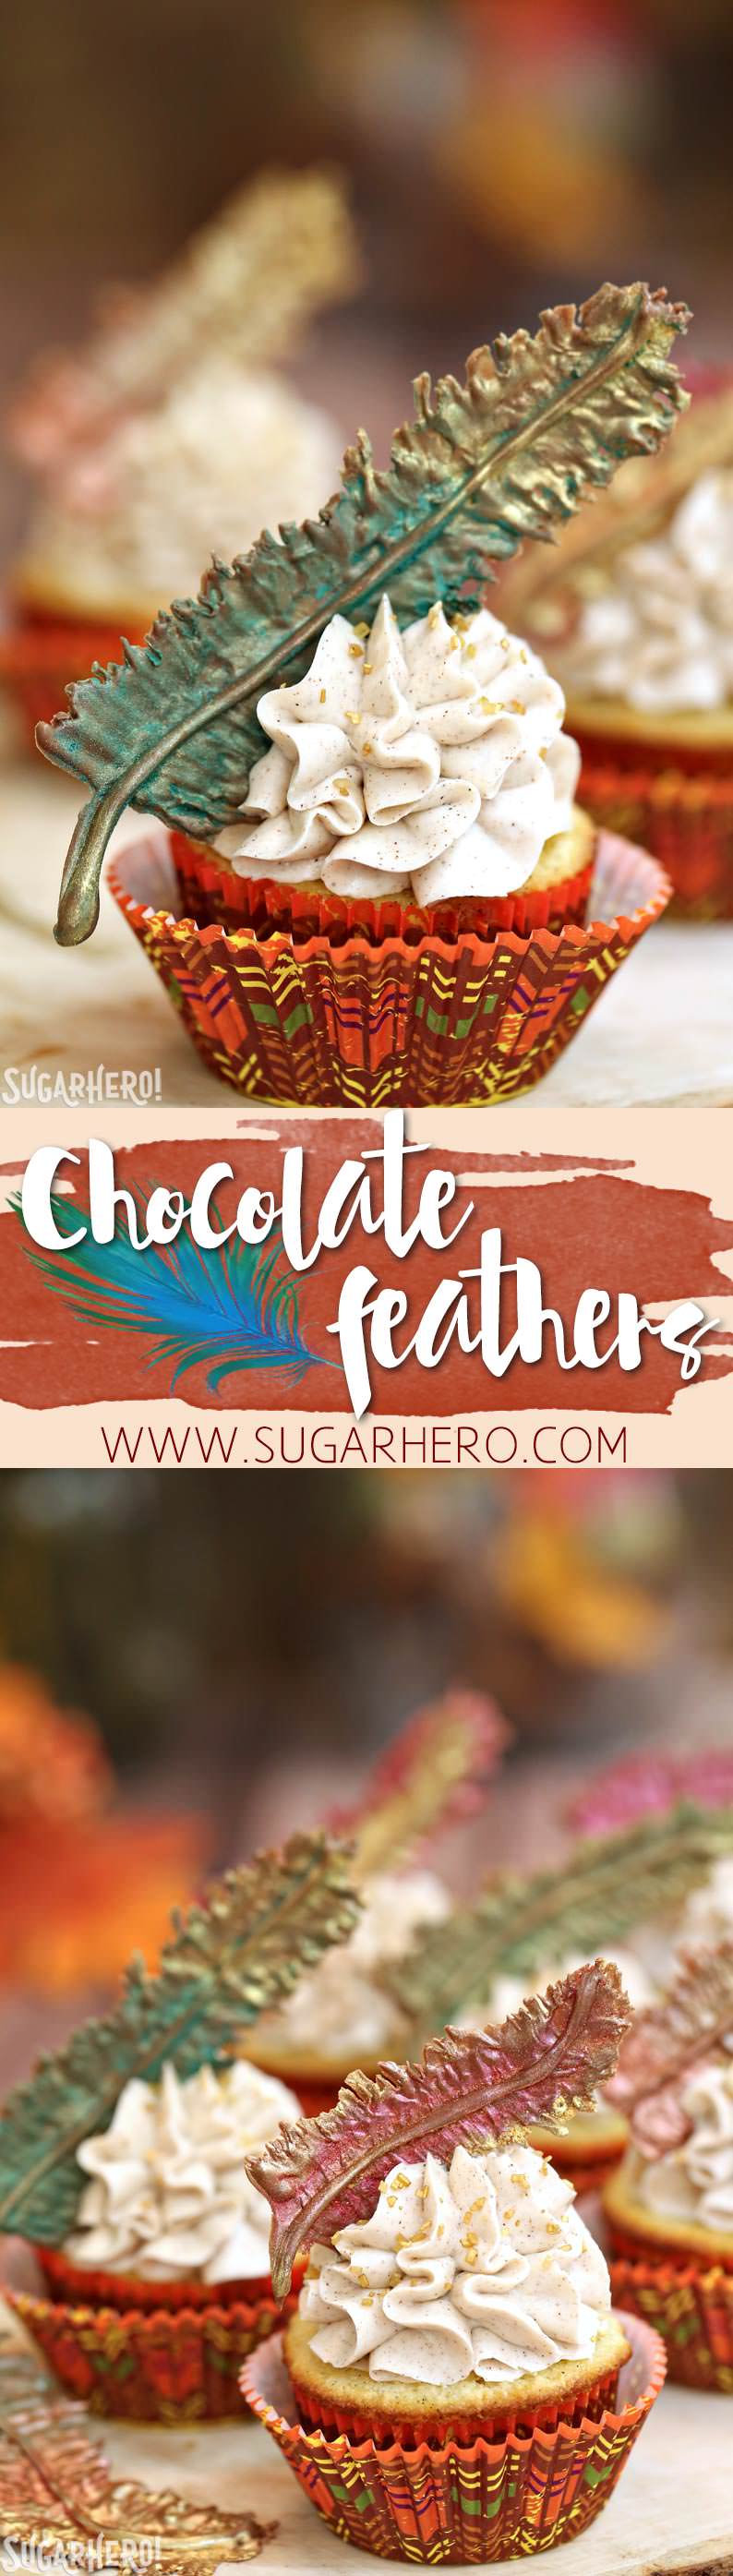 Plumas de chocolate y pastelitos de Acción de Gracias | De SugarHero.com